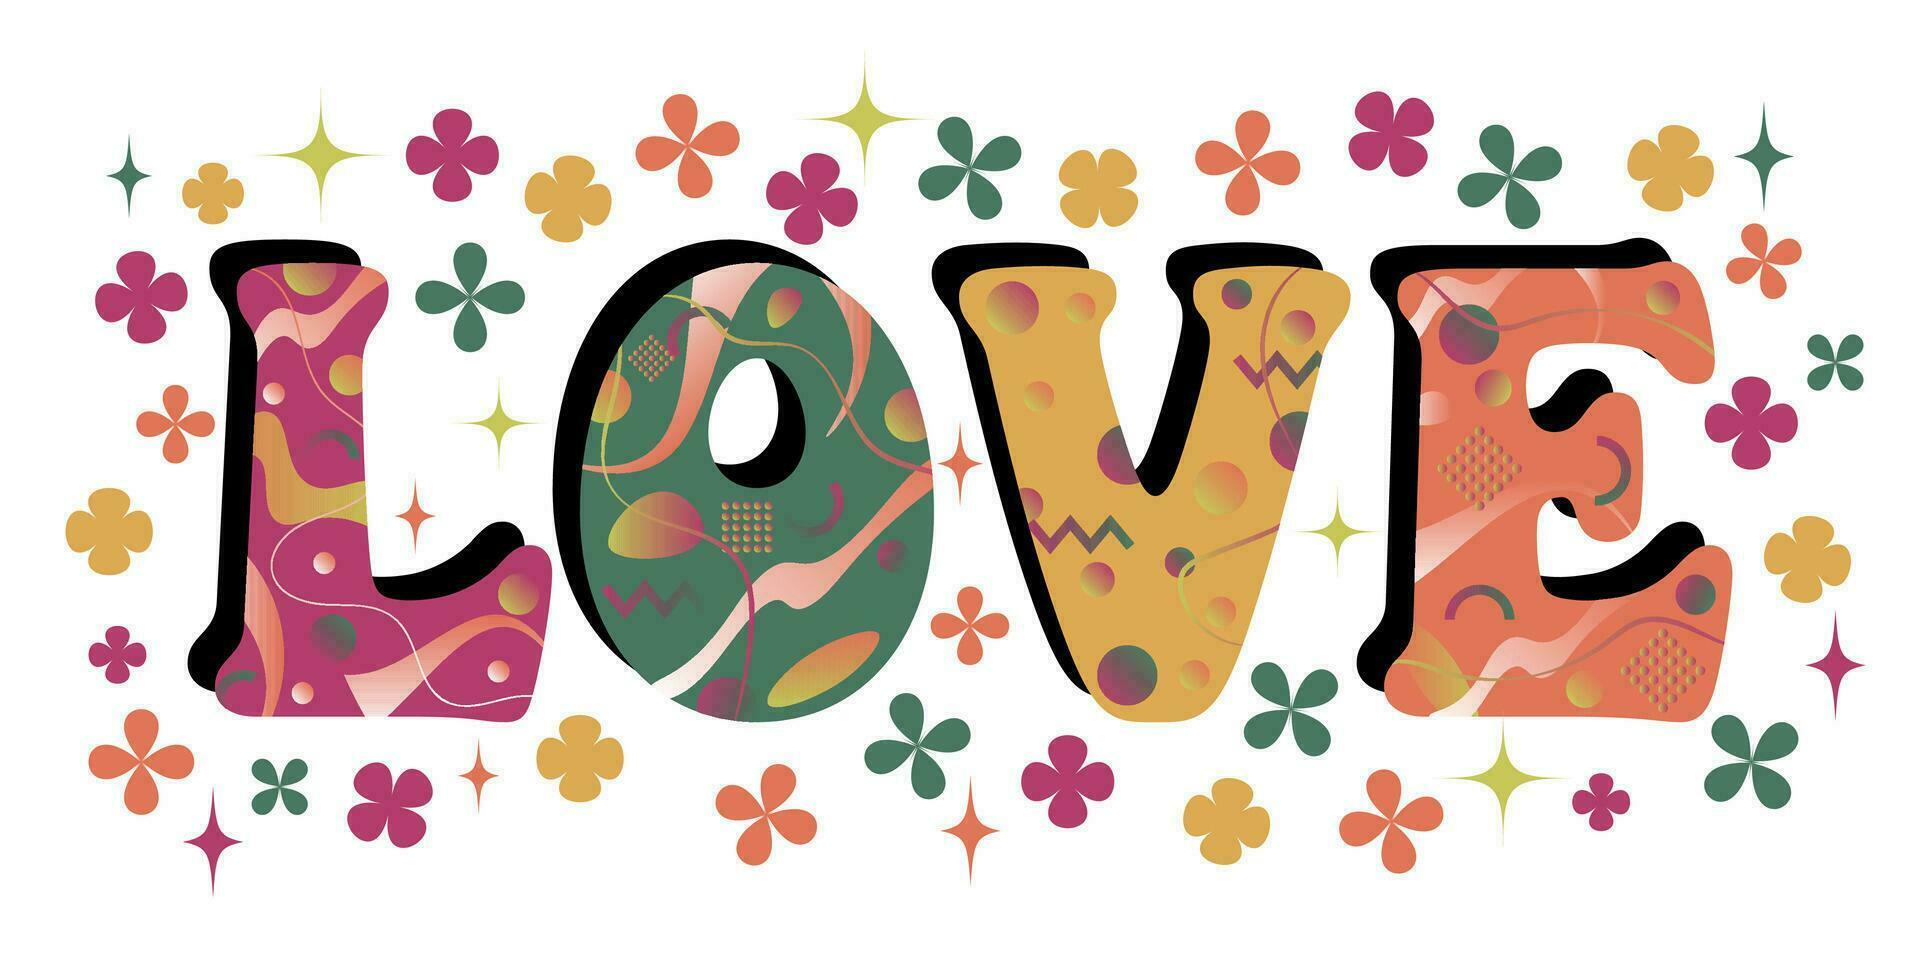 kärlek i 1960-talsstil psychedelic typografi med blommor och stjärnor. hjärtans dag kärlek meddelande. vektor